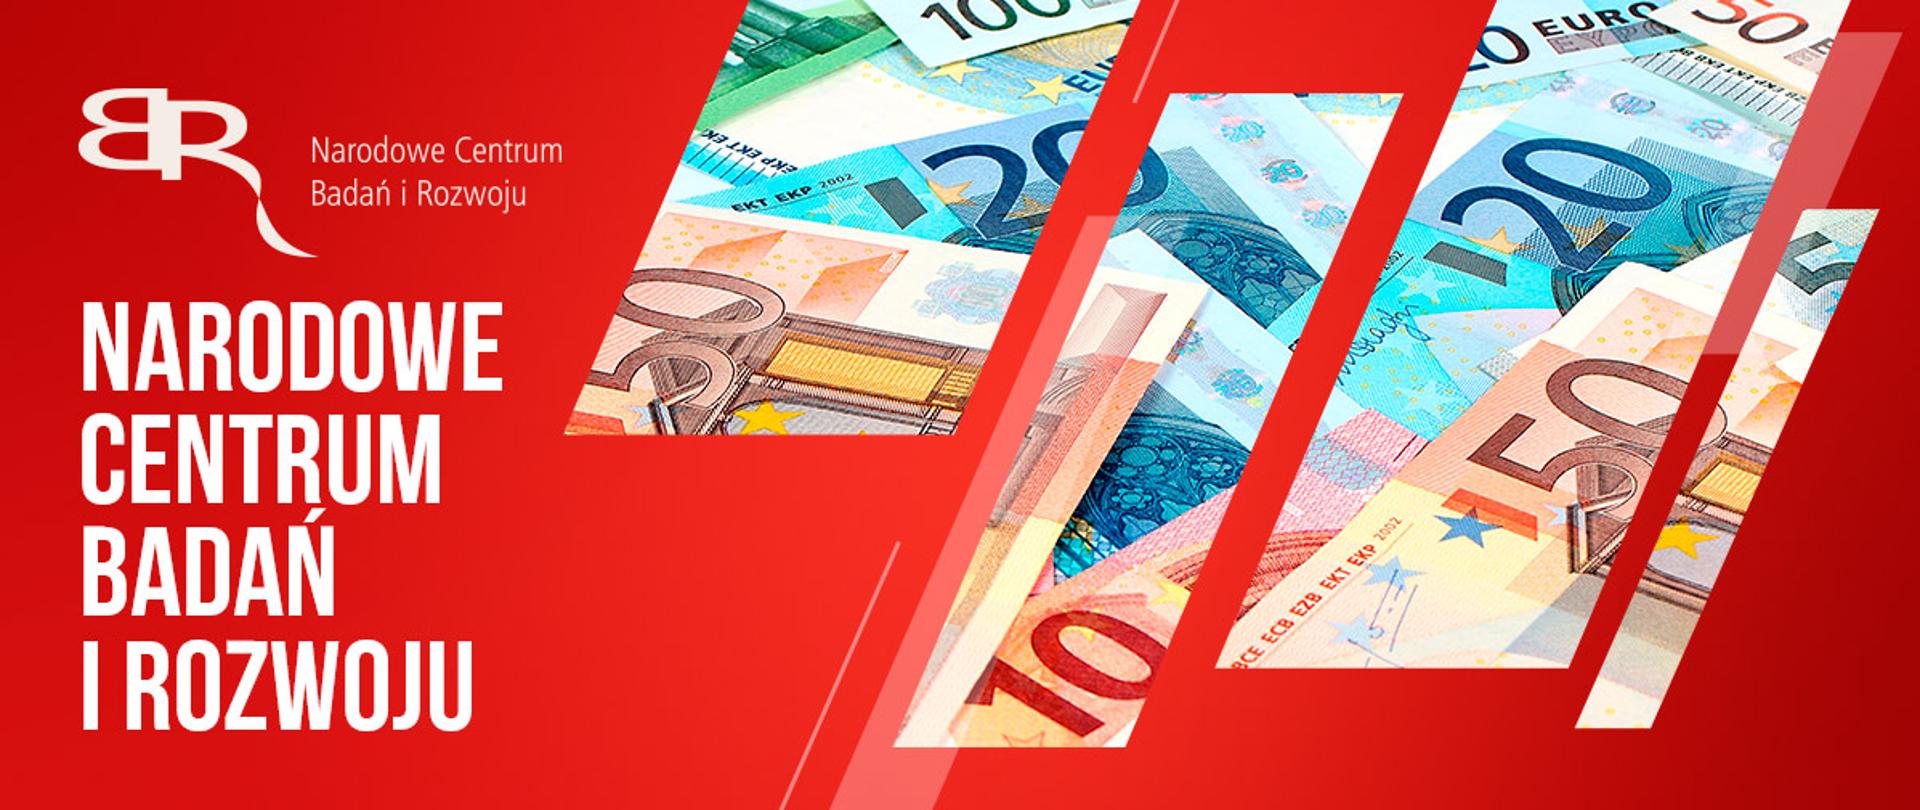 Na czerwonym tle po lewej na górze logo NCBR w kolorze białym , czyli odwrócona litera B stykająca się z literą R, poniżej napis białymi literami: Narodowe Centrum Badań i Rozwoju. Z prawej strony przez wycięte w tle ukośne prostokątny widać banknoty o nominałach 10, 20, 50 i 100 euro.